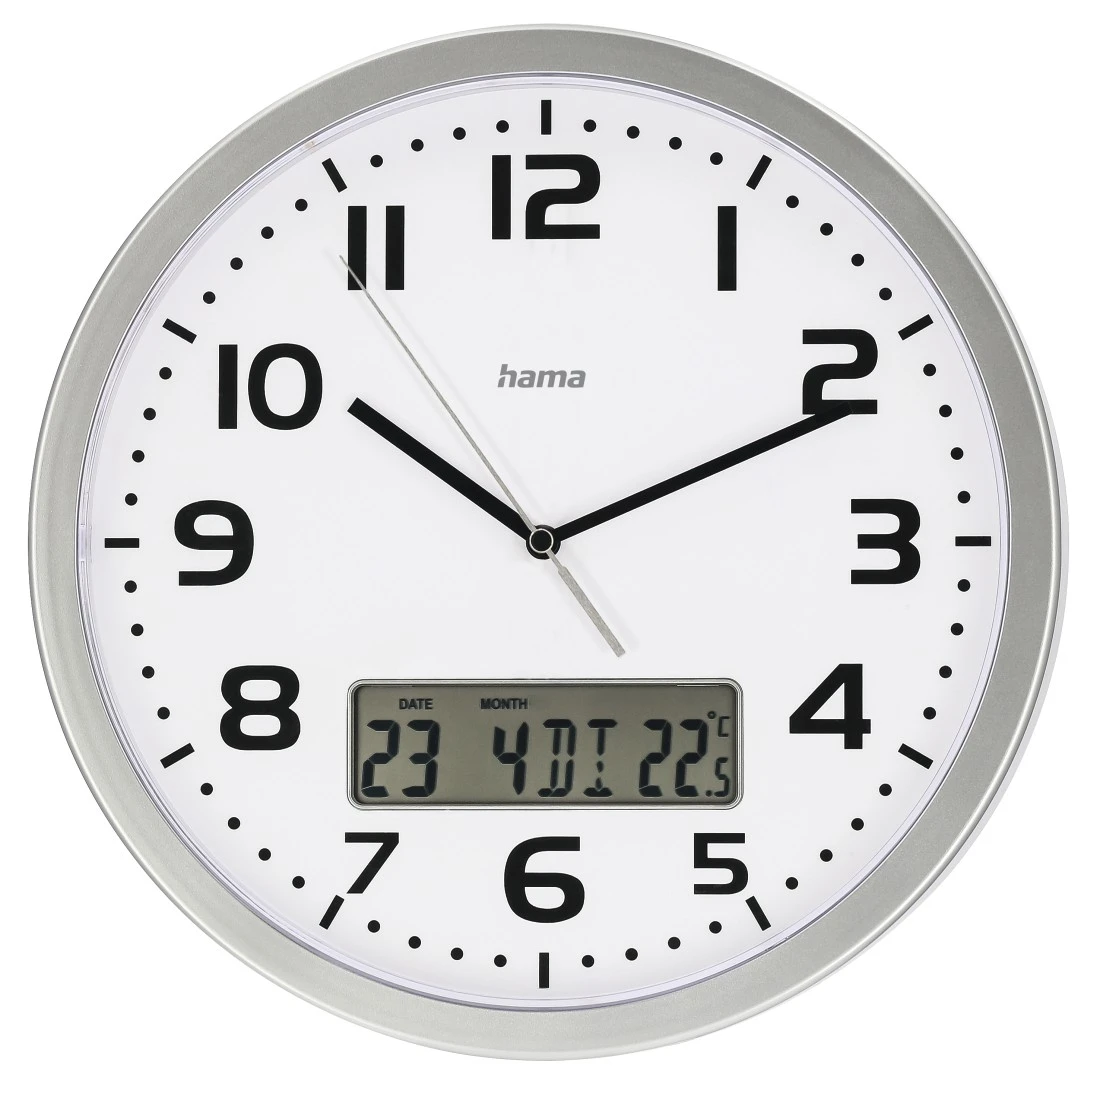 Radiogestuurde klok "Extra" met datum- en temperatuurweergave | Hama